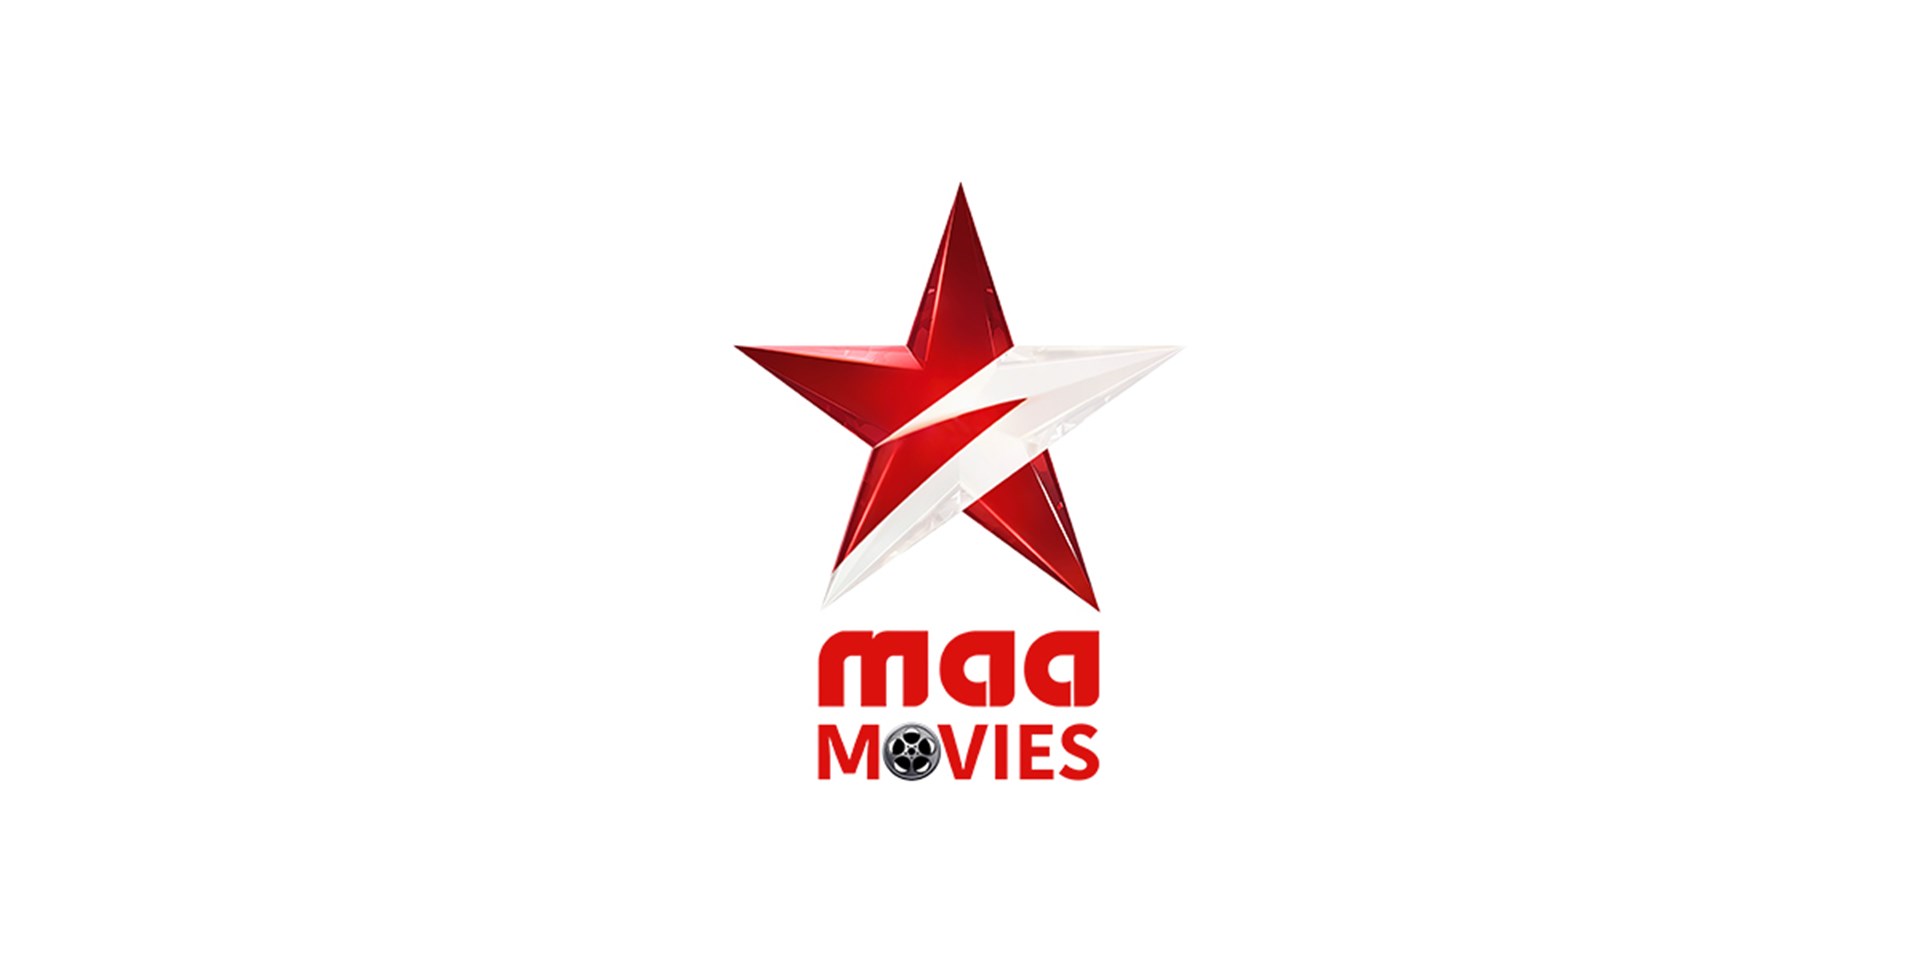 maa-movies.jpg